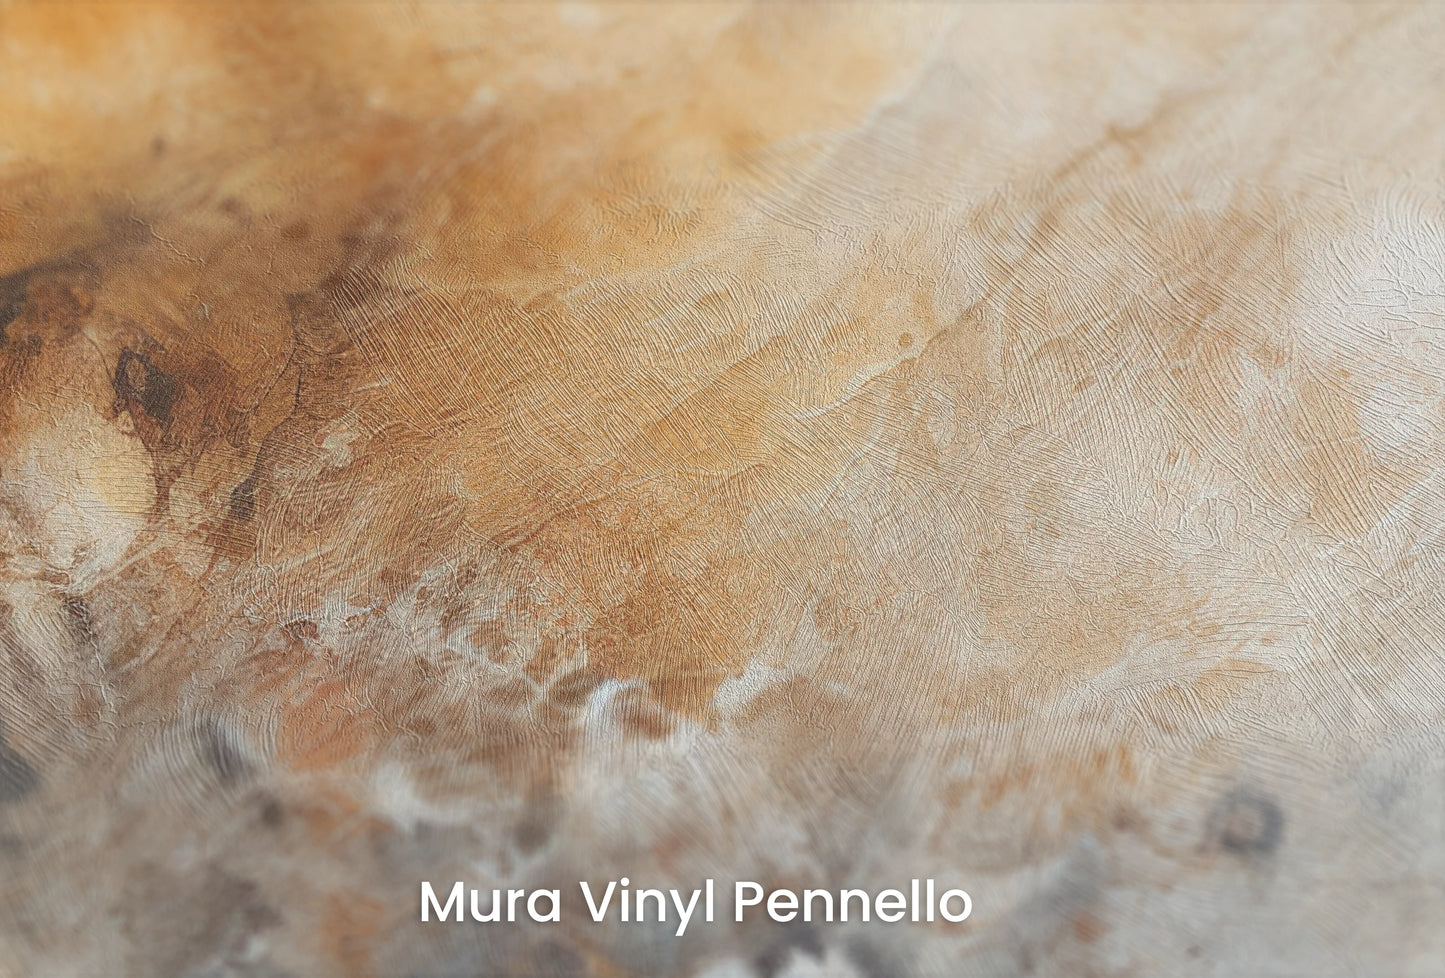 Zbliżenie na artystyczną fototapetę o nazwie Venusian Haze na podłożu Mura Vinyl Pennello - faktura pociągnięć pędzla malarskiego.